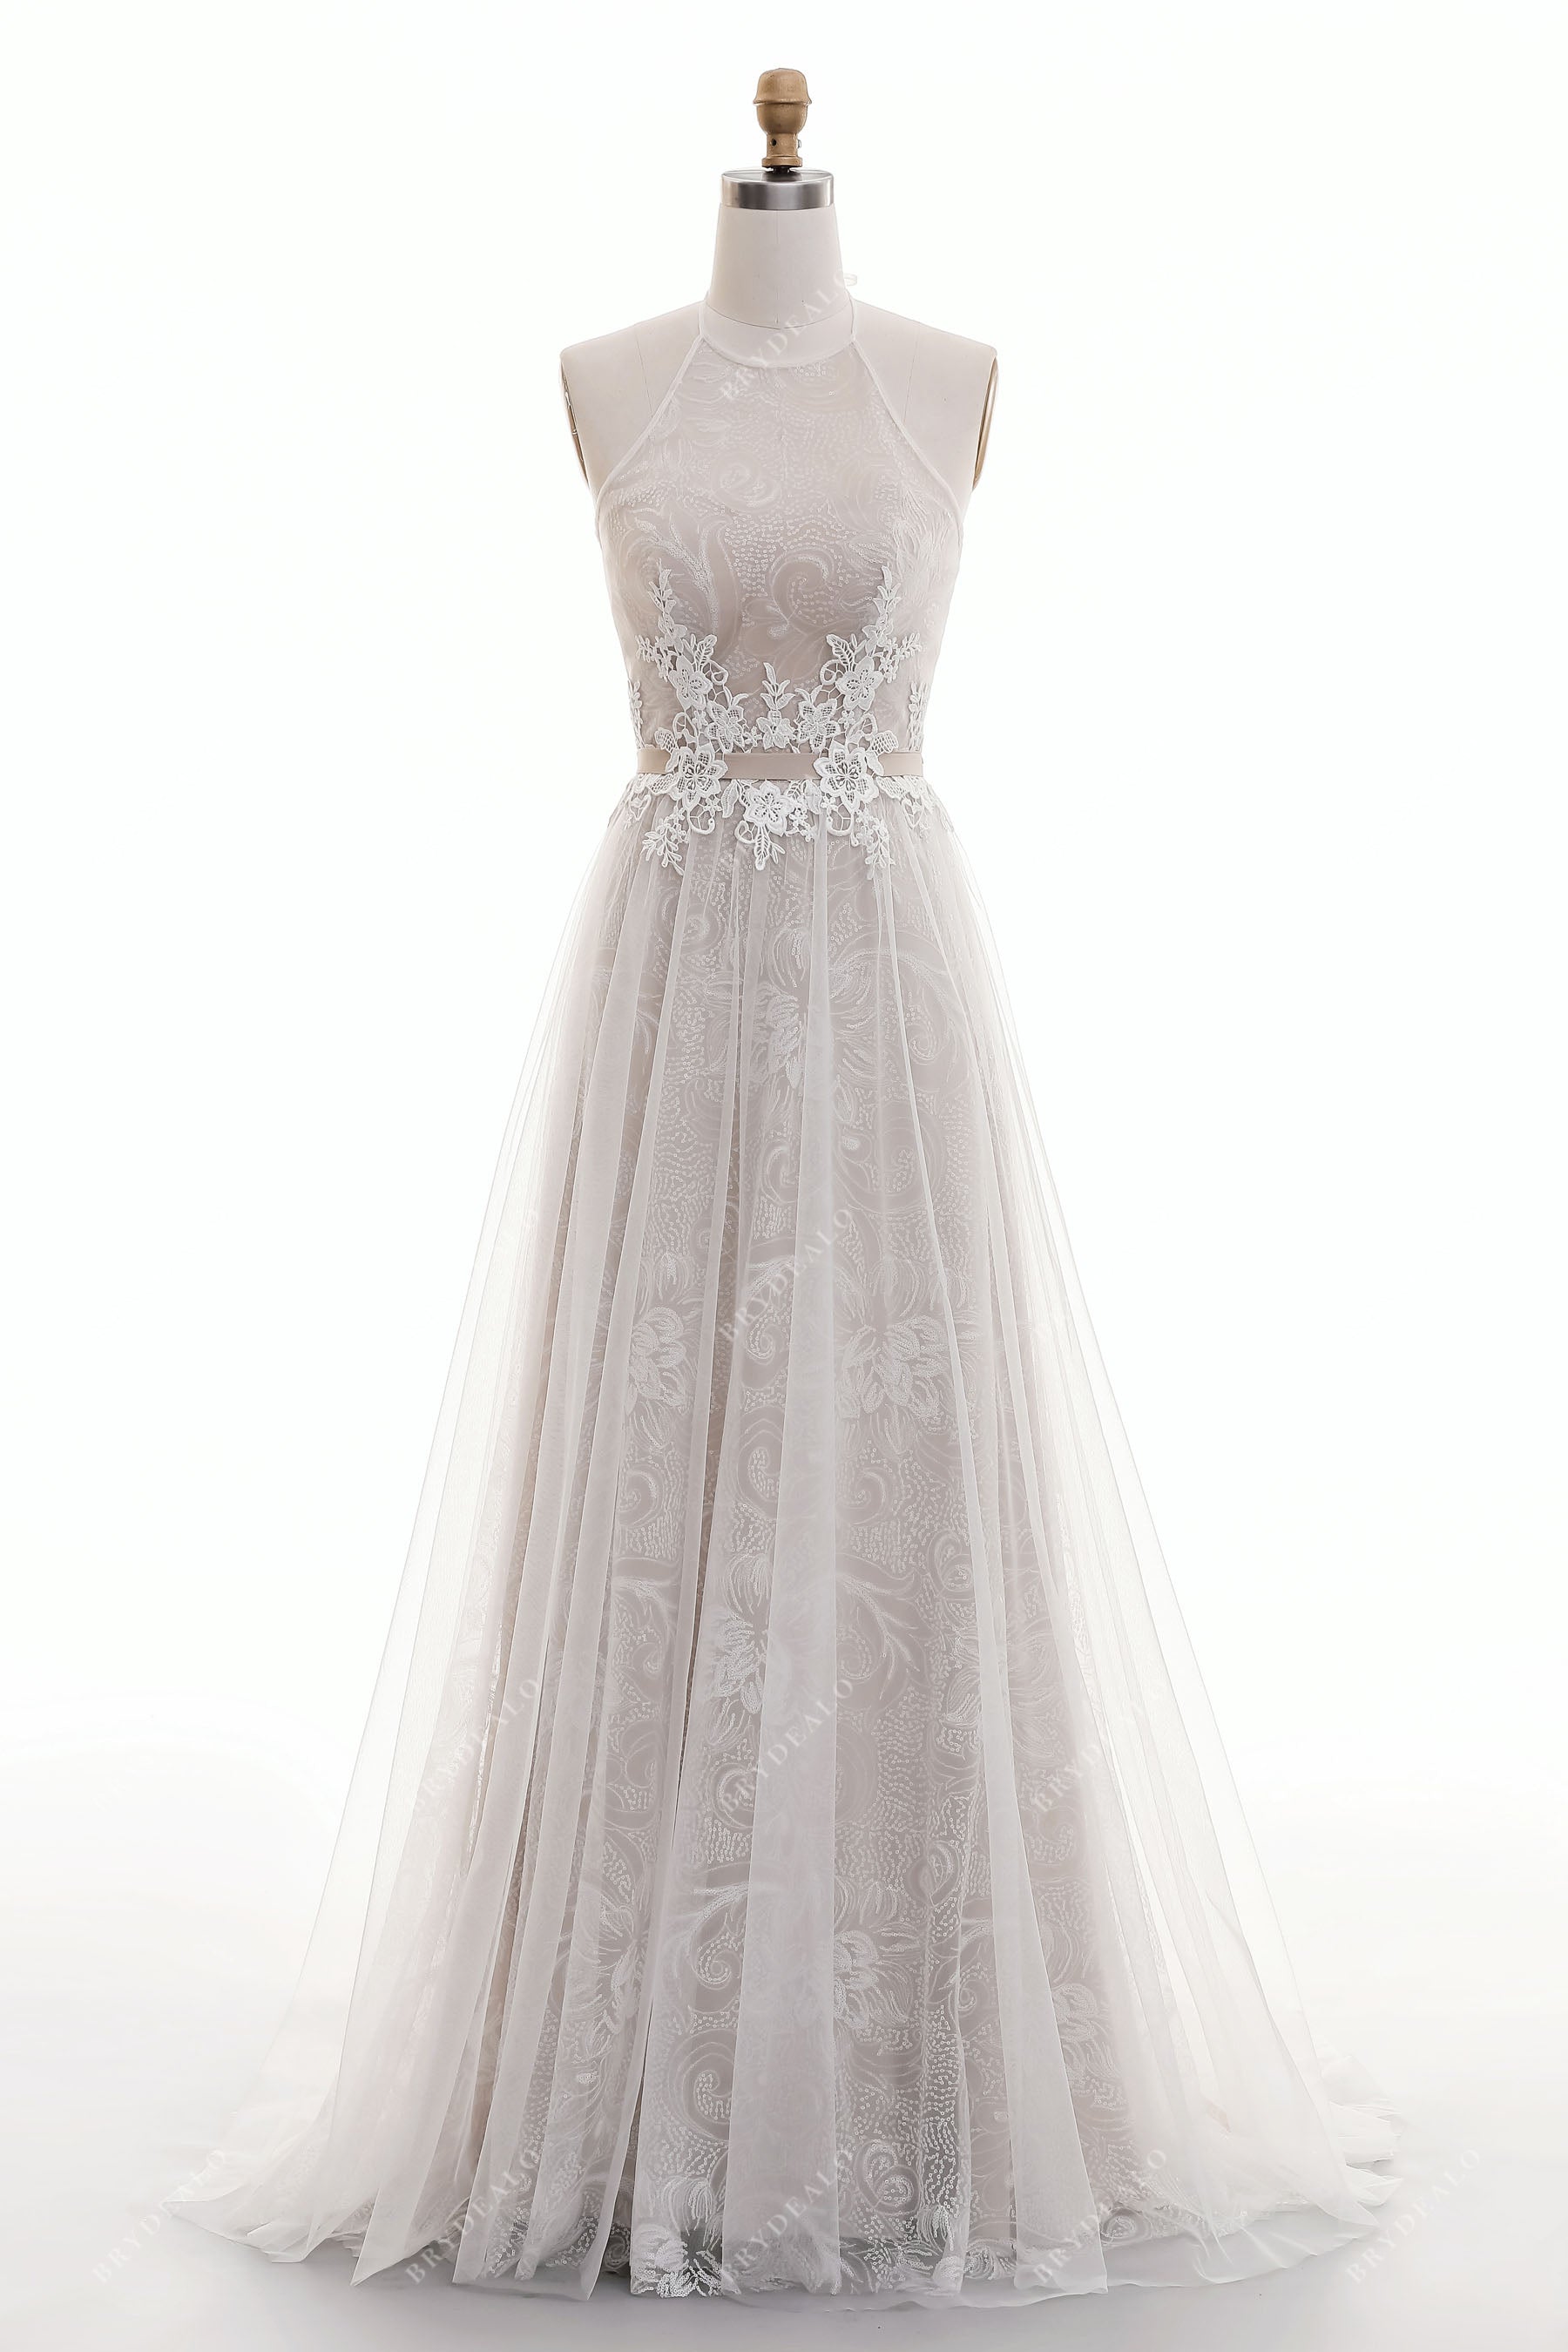 Twinkling Dreamy Halter Lace Wedding Dress